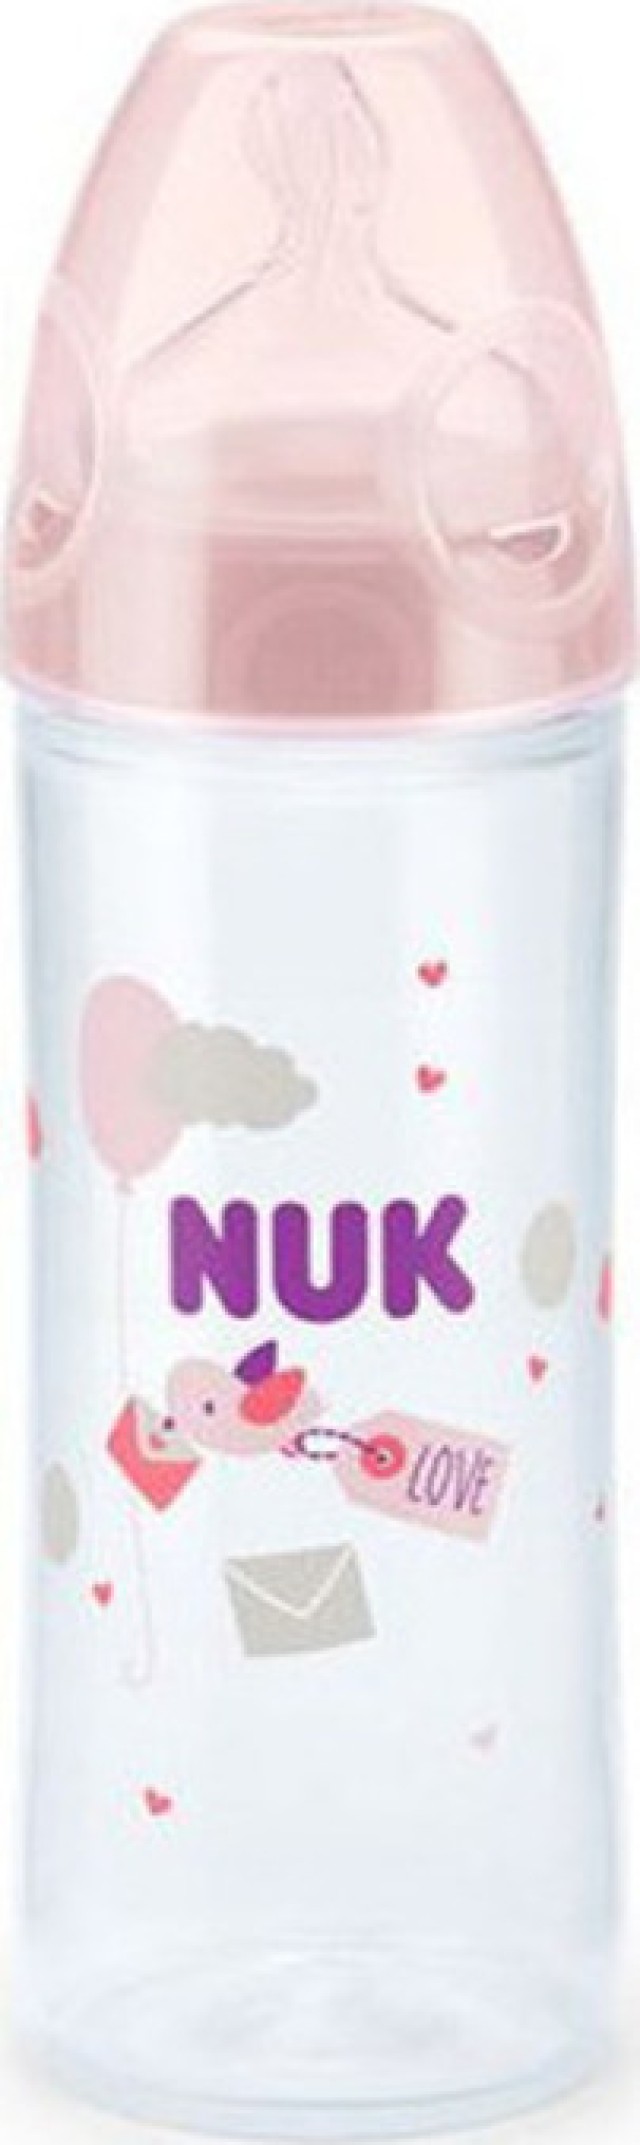 NUK Μπιμπερό Πλαστικό 6-18m New Classic Mε Θηλή Σιλικόνης Ροζ Πουλάκι (10.741.625), 250ml